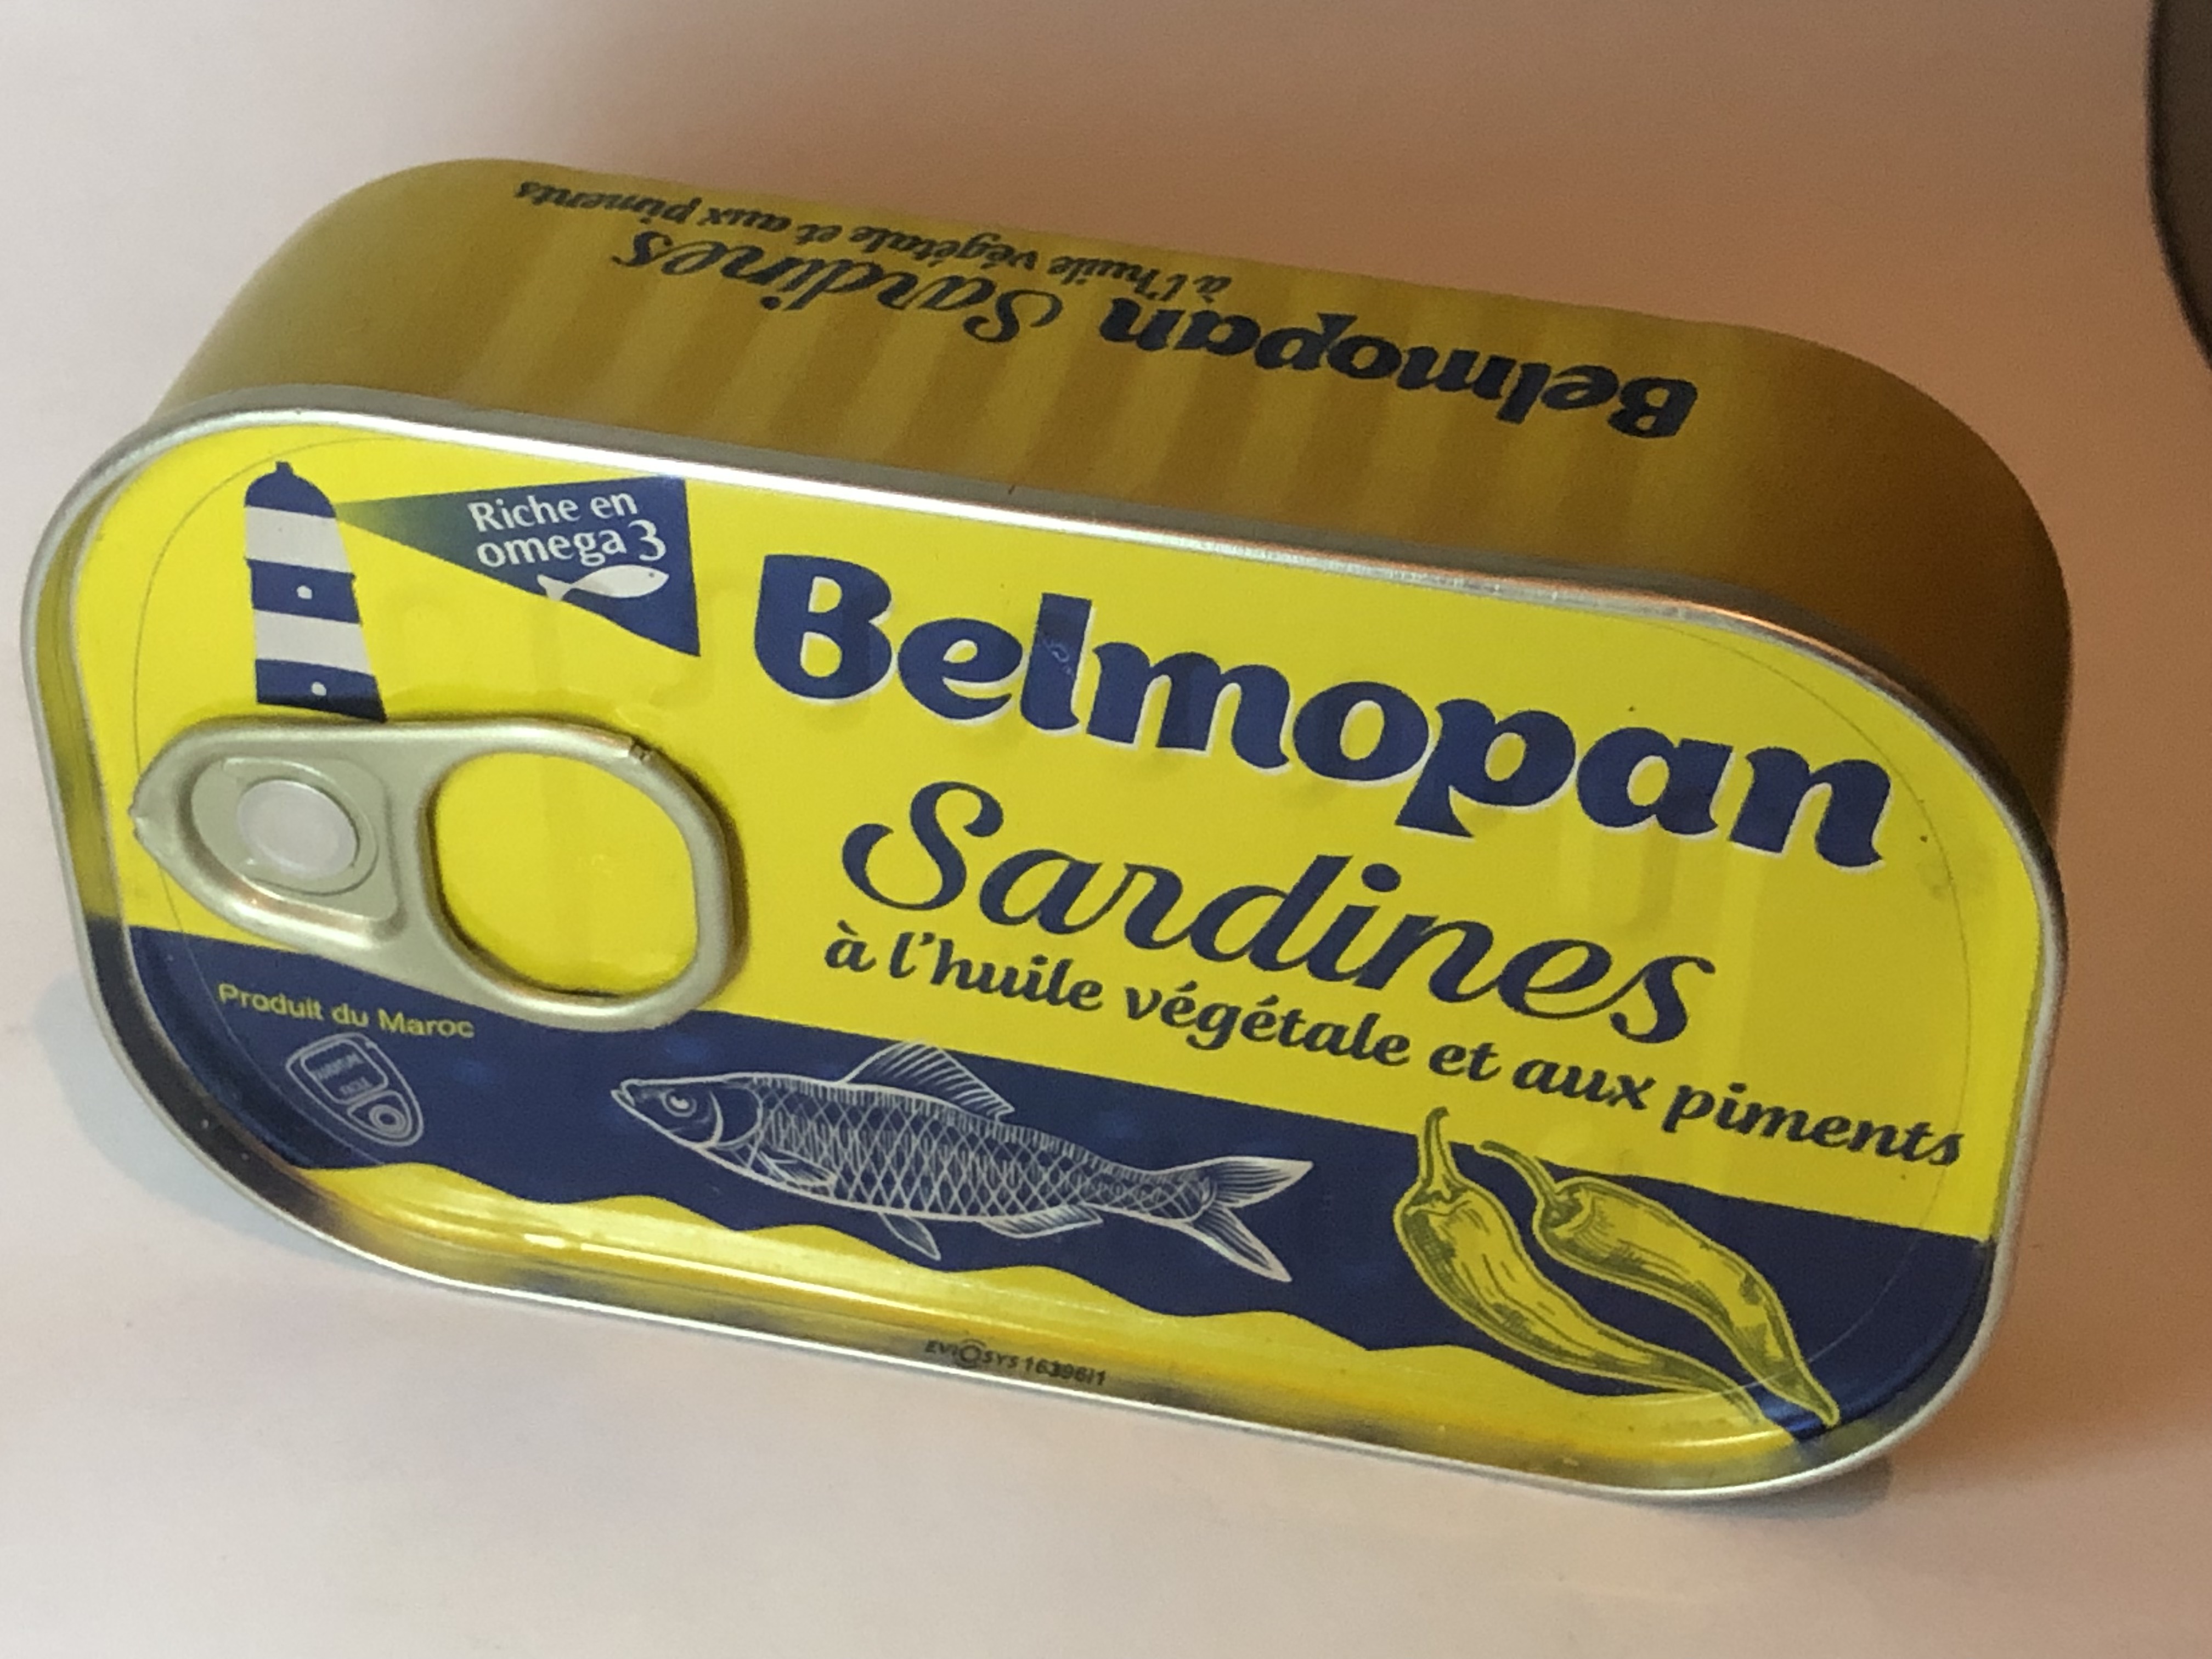 Sardines en conserves à l'huile végétale /boite de 125g Import Export